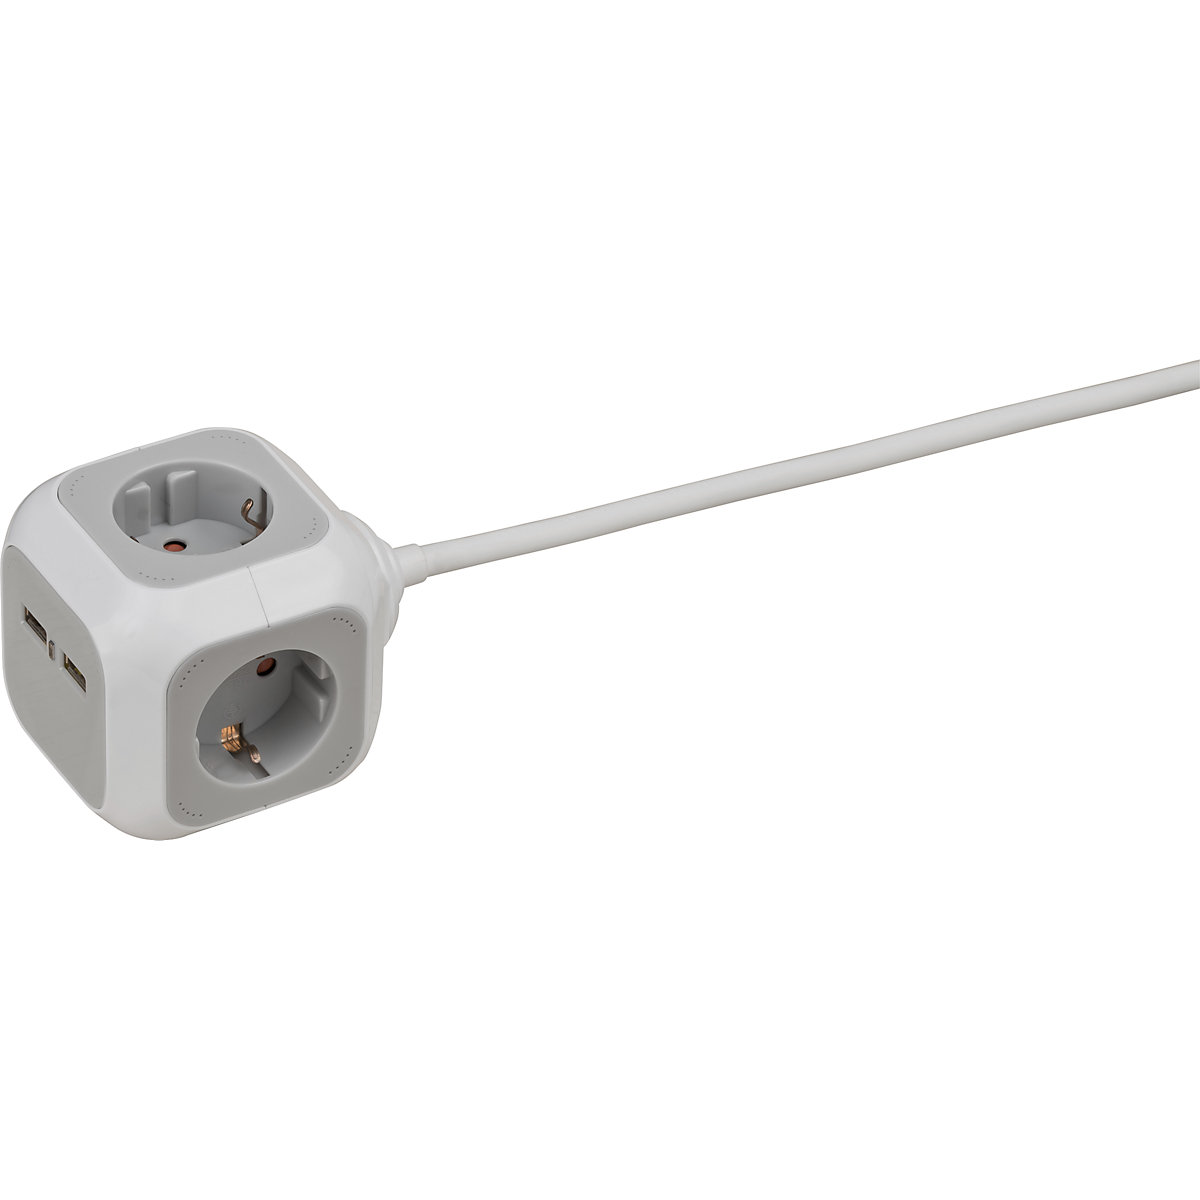 ALEA-Power blok stopcontacten met USB-lader – Brennenstuhl (Productafbeelding 2)-1